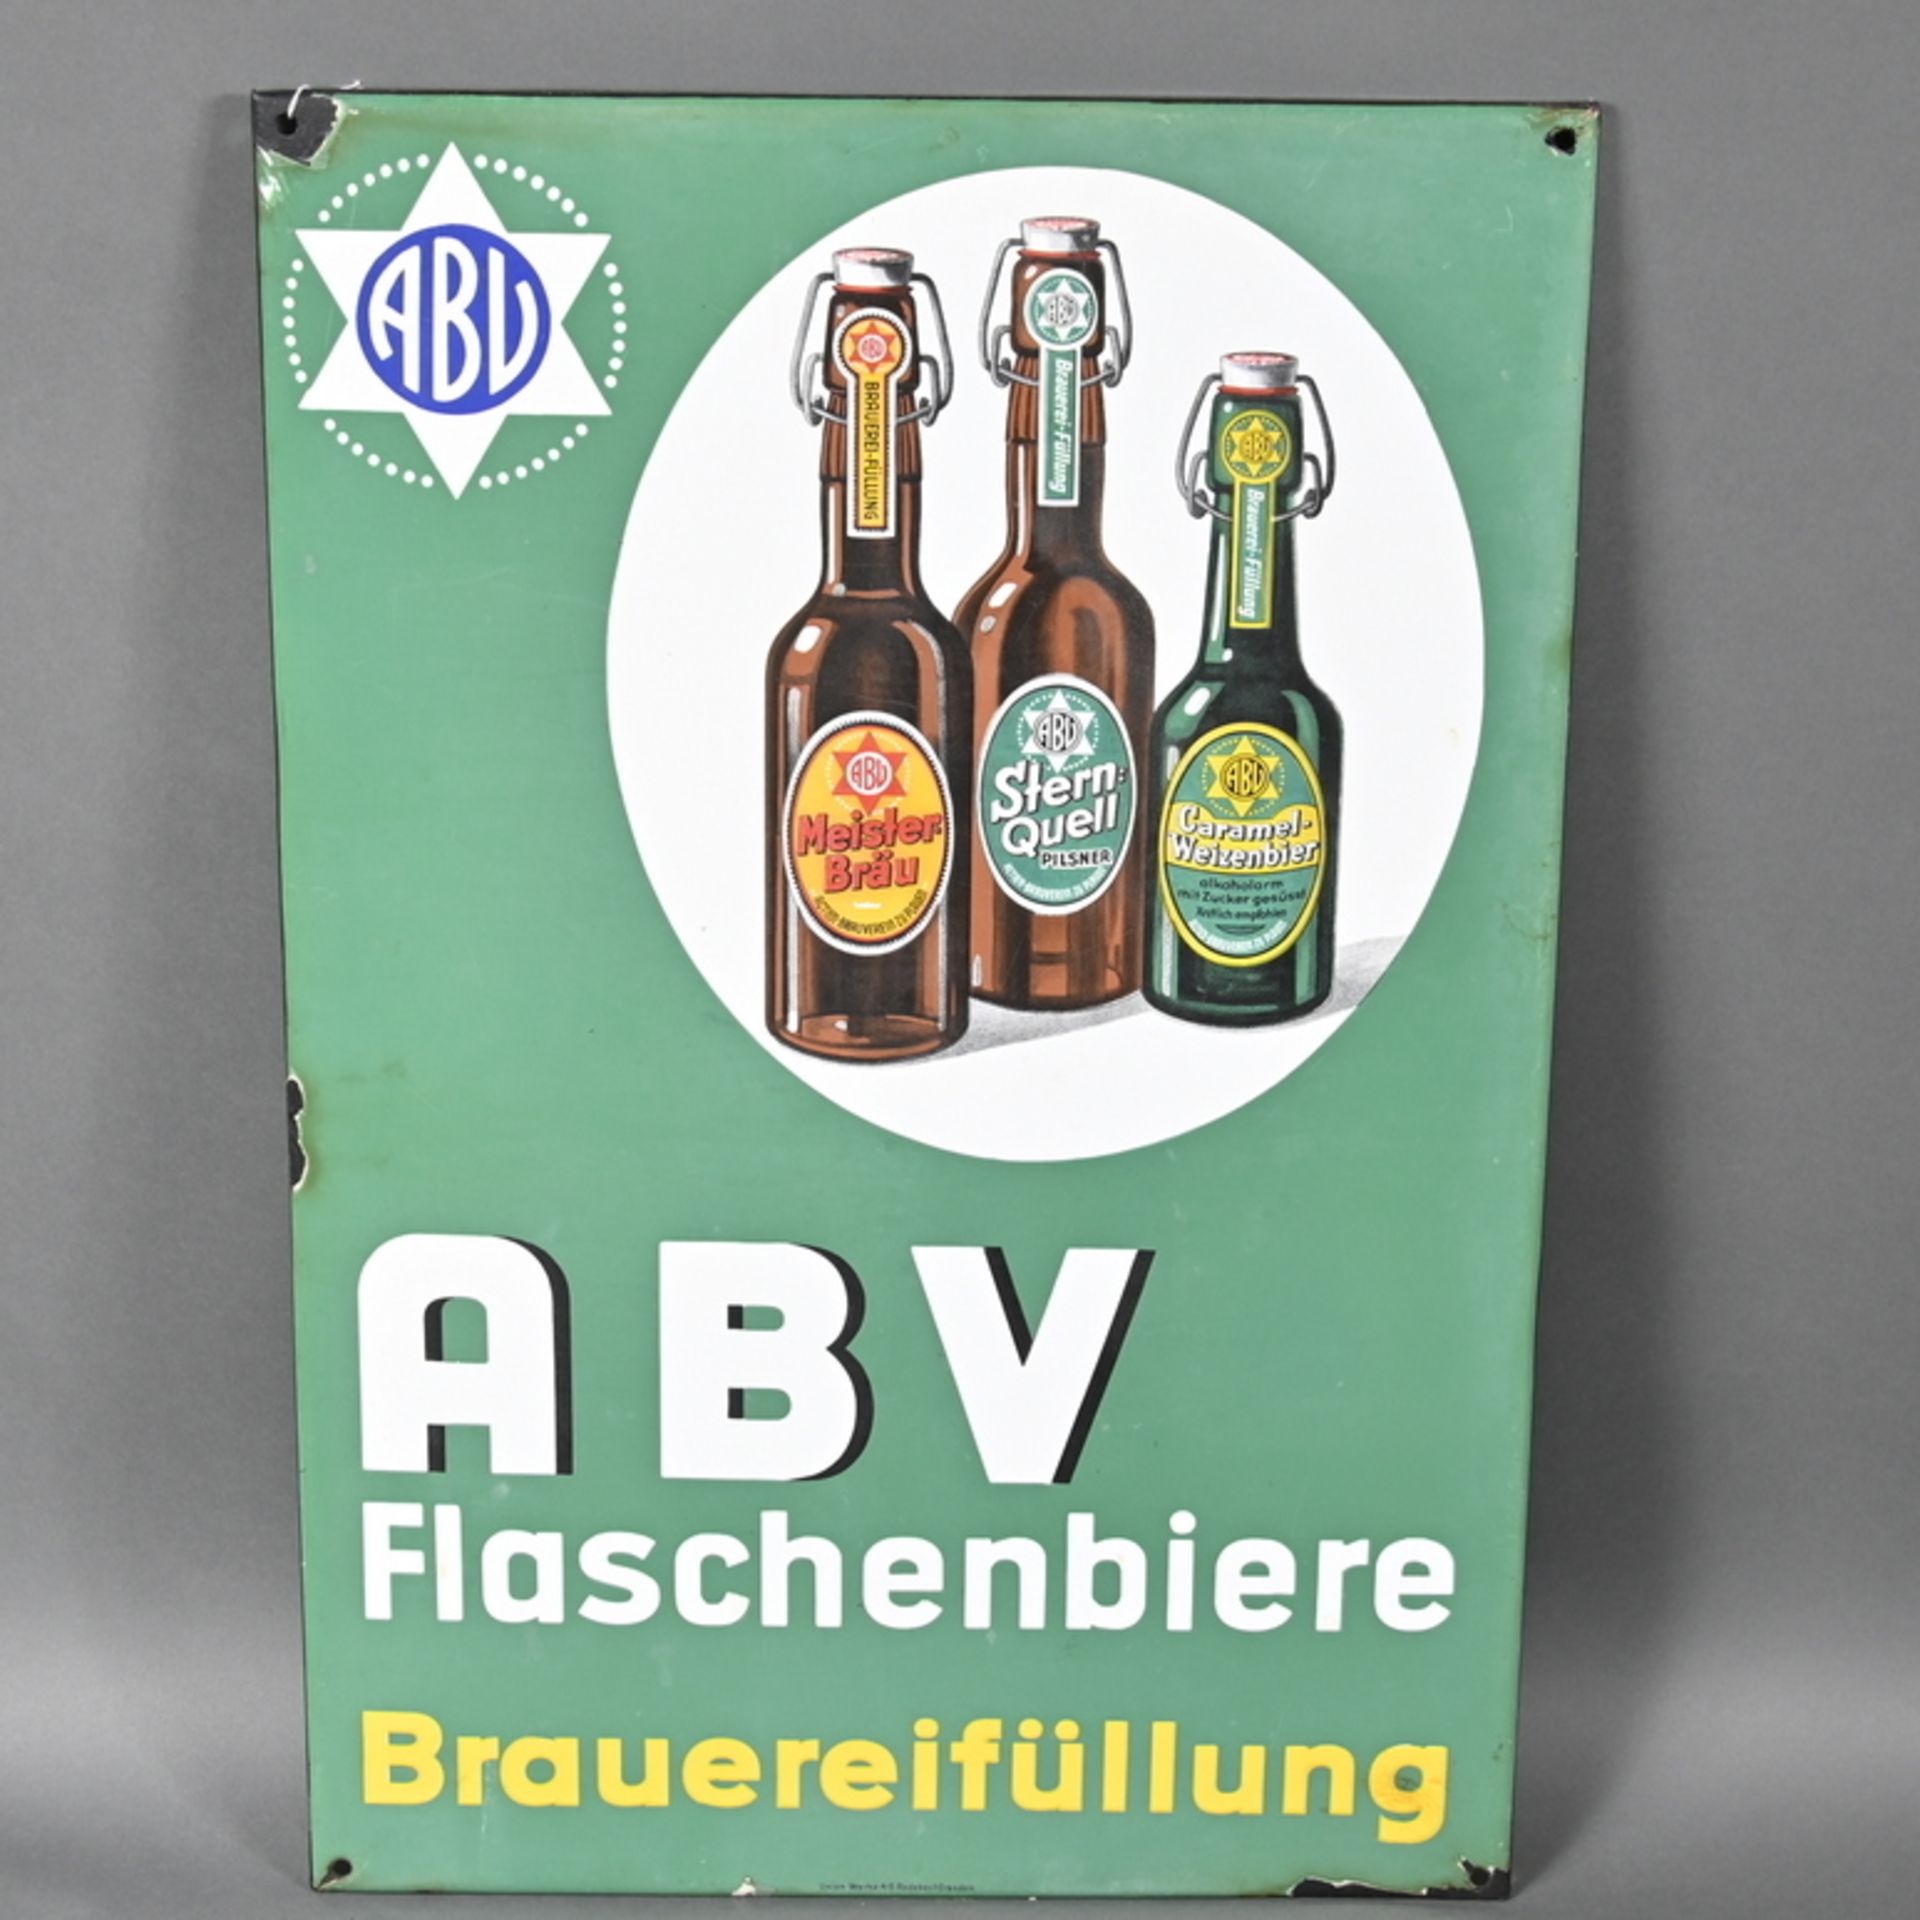 "Aktien- Brauereiverein zu Plauen" Flaschenbiere Brauereiabfüllung, Emailleschild, abgekantet, um